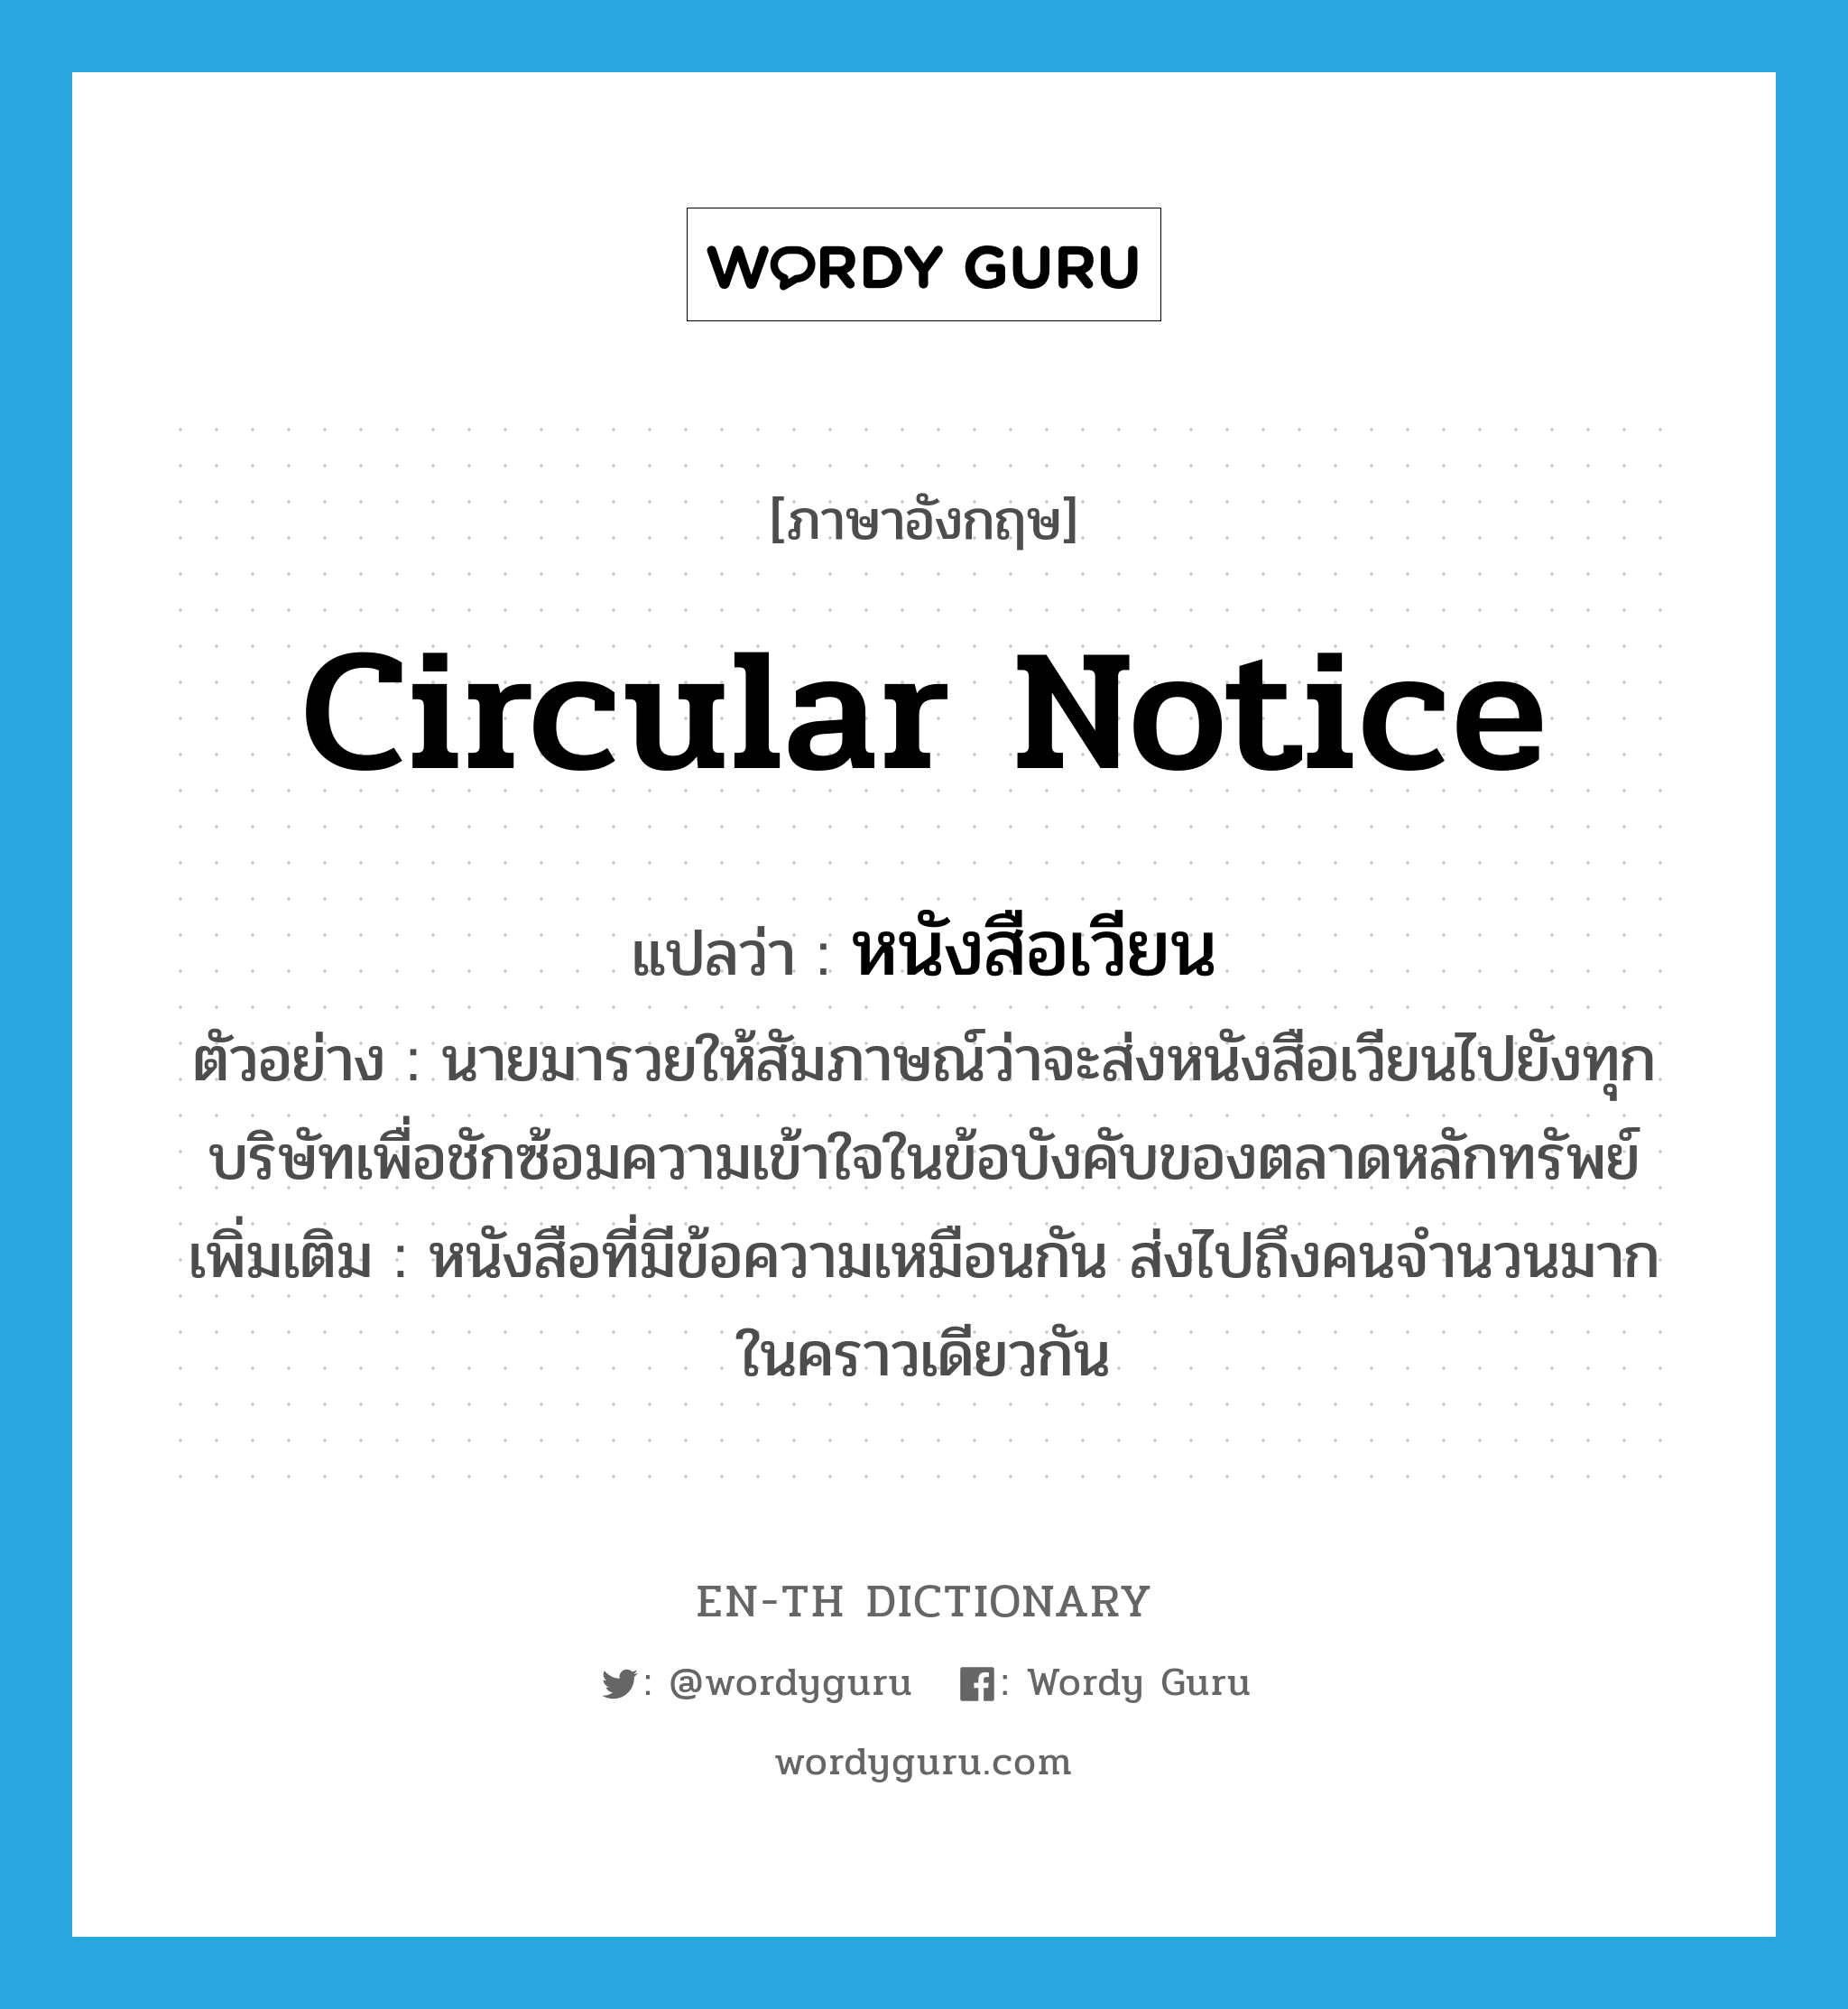 circular notice แปลว่า?, คำศัพท์ภาษาอังกฤษ circular notice แปลว่า หนังสือเวียน ประเภท N ตัวอย่าง นายมารวยให้สัมภาษณ์ว่าจะส่งหนังสือเวียนไปยังทุกบริษัทเพื่อชักซ้อมความเข้าใจในข้อบังคับของตลาดหลักทรัพย์ เพิ่มเติม หนังสือที่มีข้อความเหมือนกัน ส่งไปถึงคนจำนวนมากในคราวเดียวกัน หมวด N